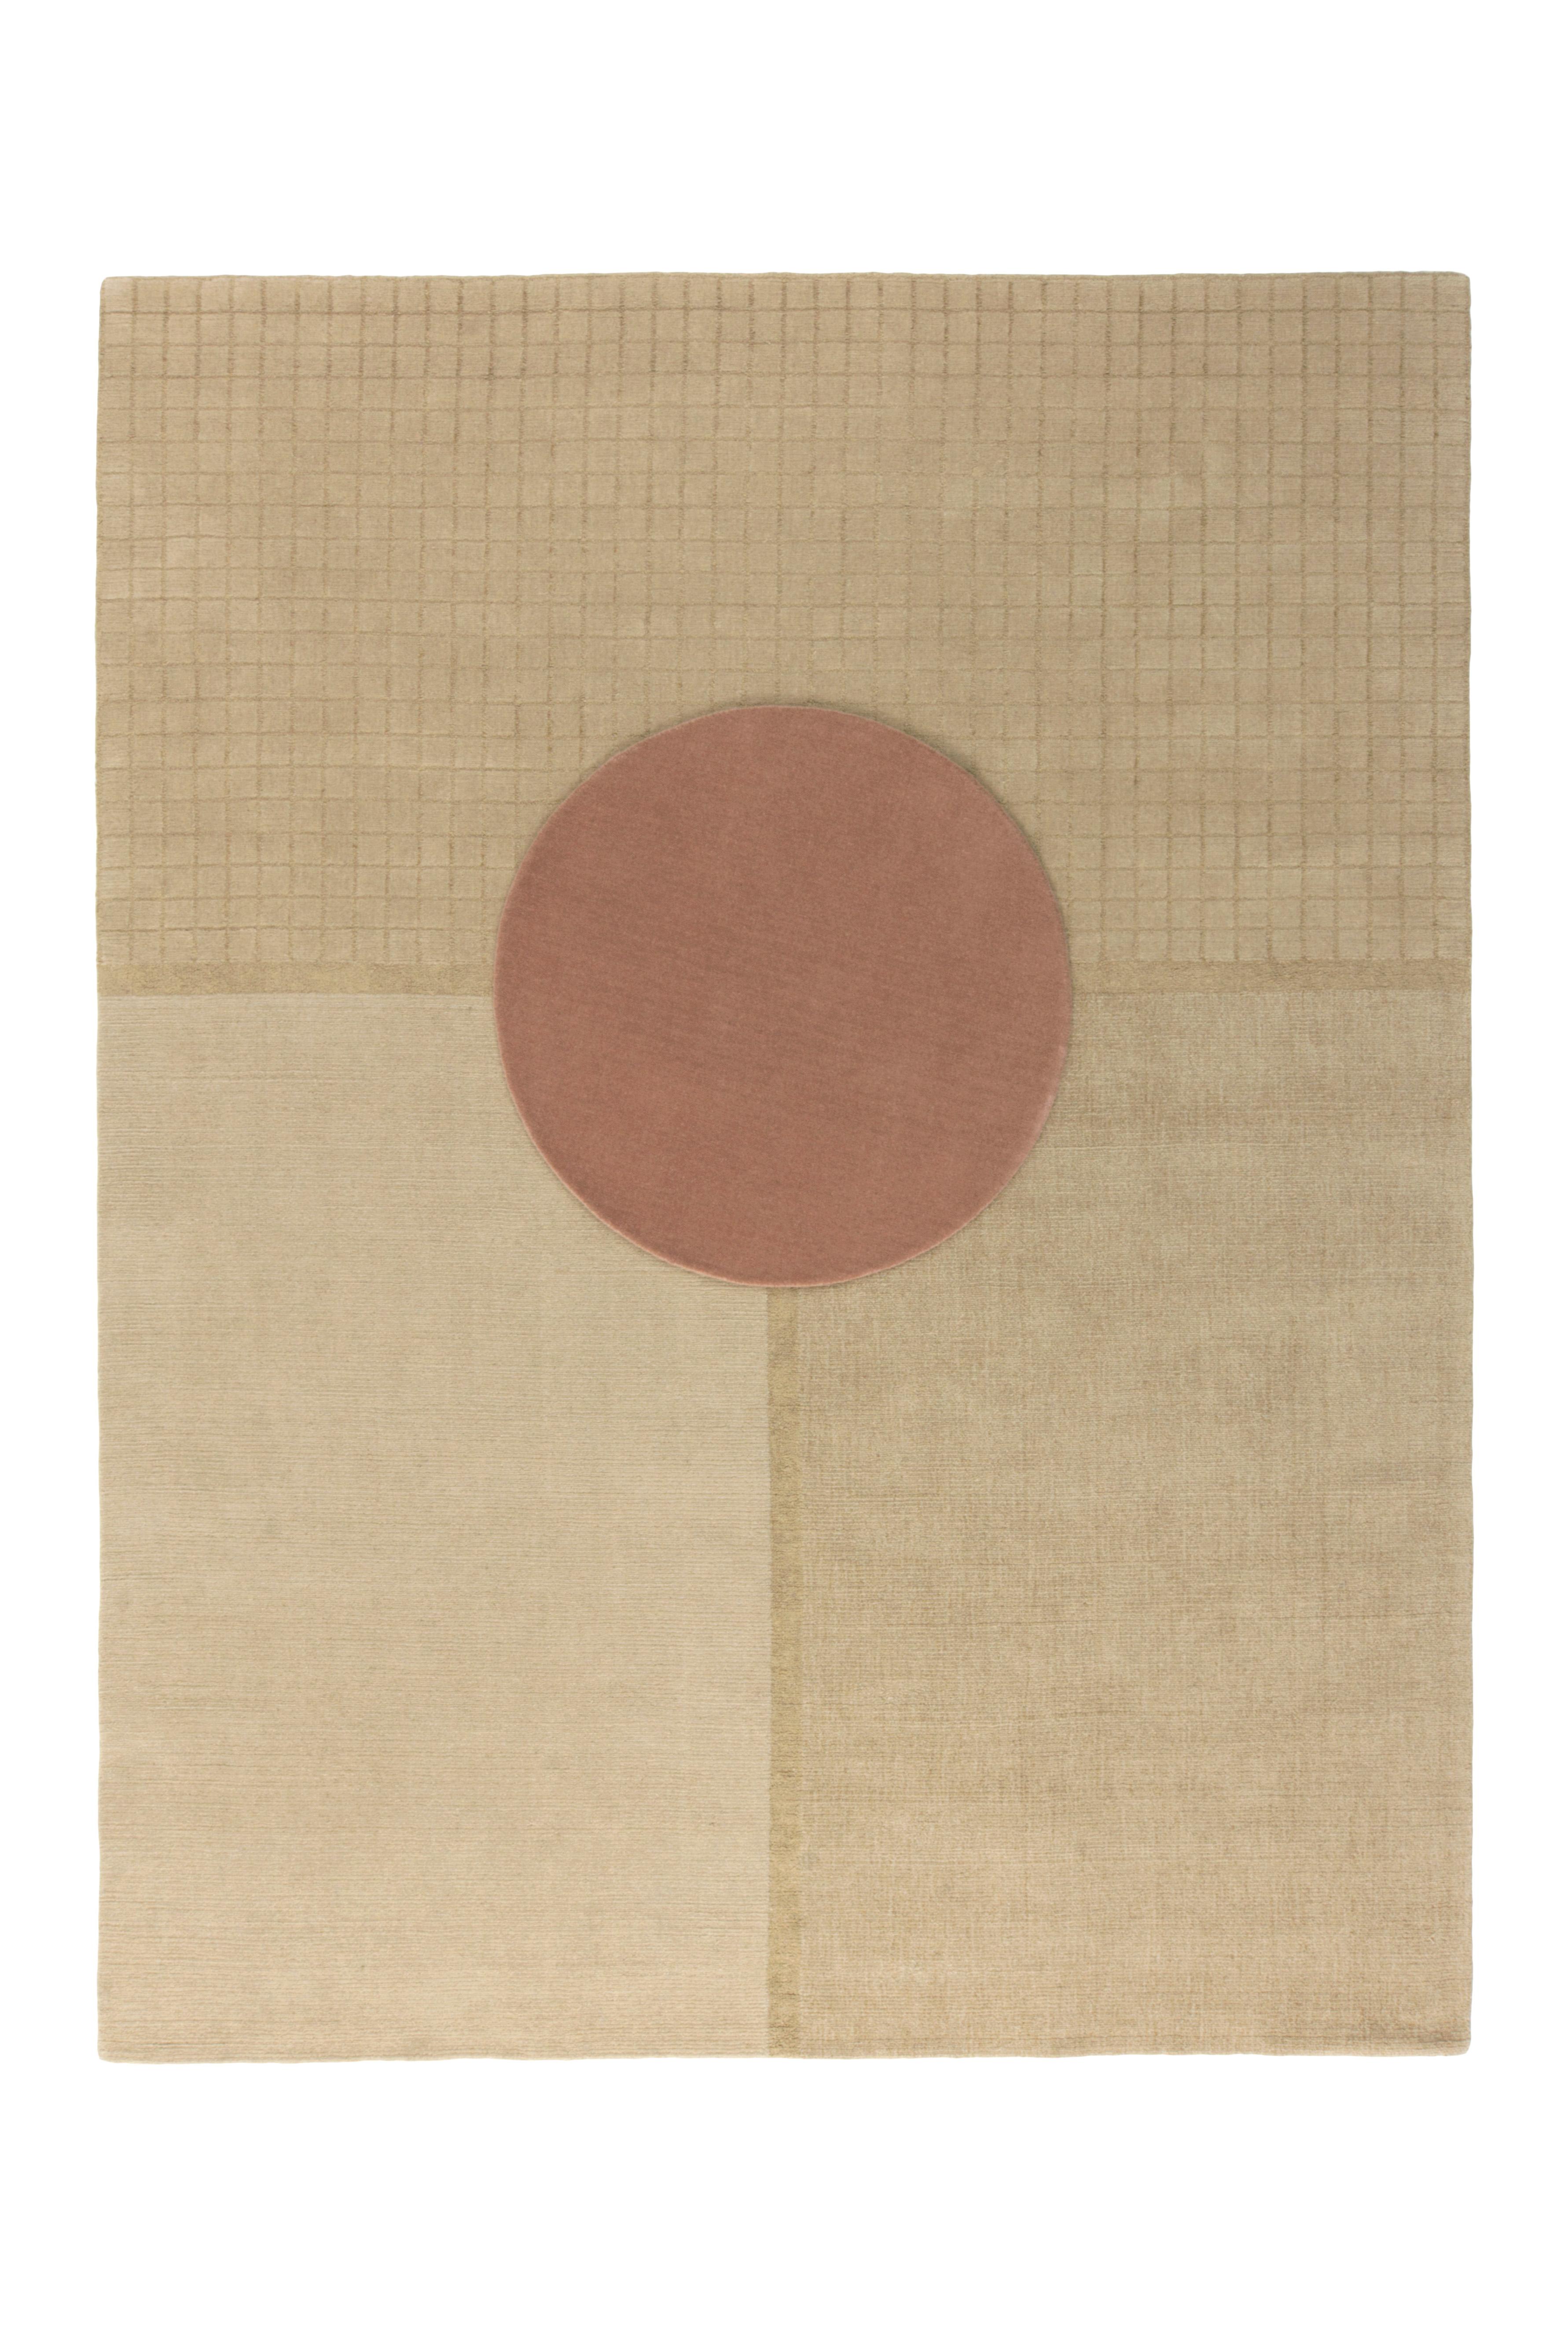 Conçue par la designer textile Mae Engelgeer et inspirée par le sentiment, l'esthétique et l'alignement graphique du sol traditionnel japonais Tatami, Ceremony est un groupe de trois tapis, Daytime, Evening Glow et Moonlight, et un circulaire,